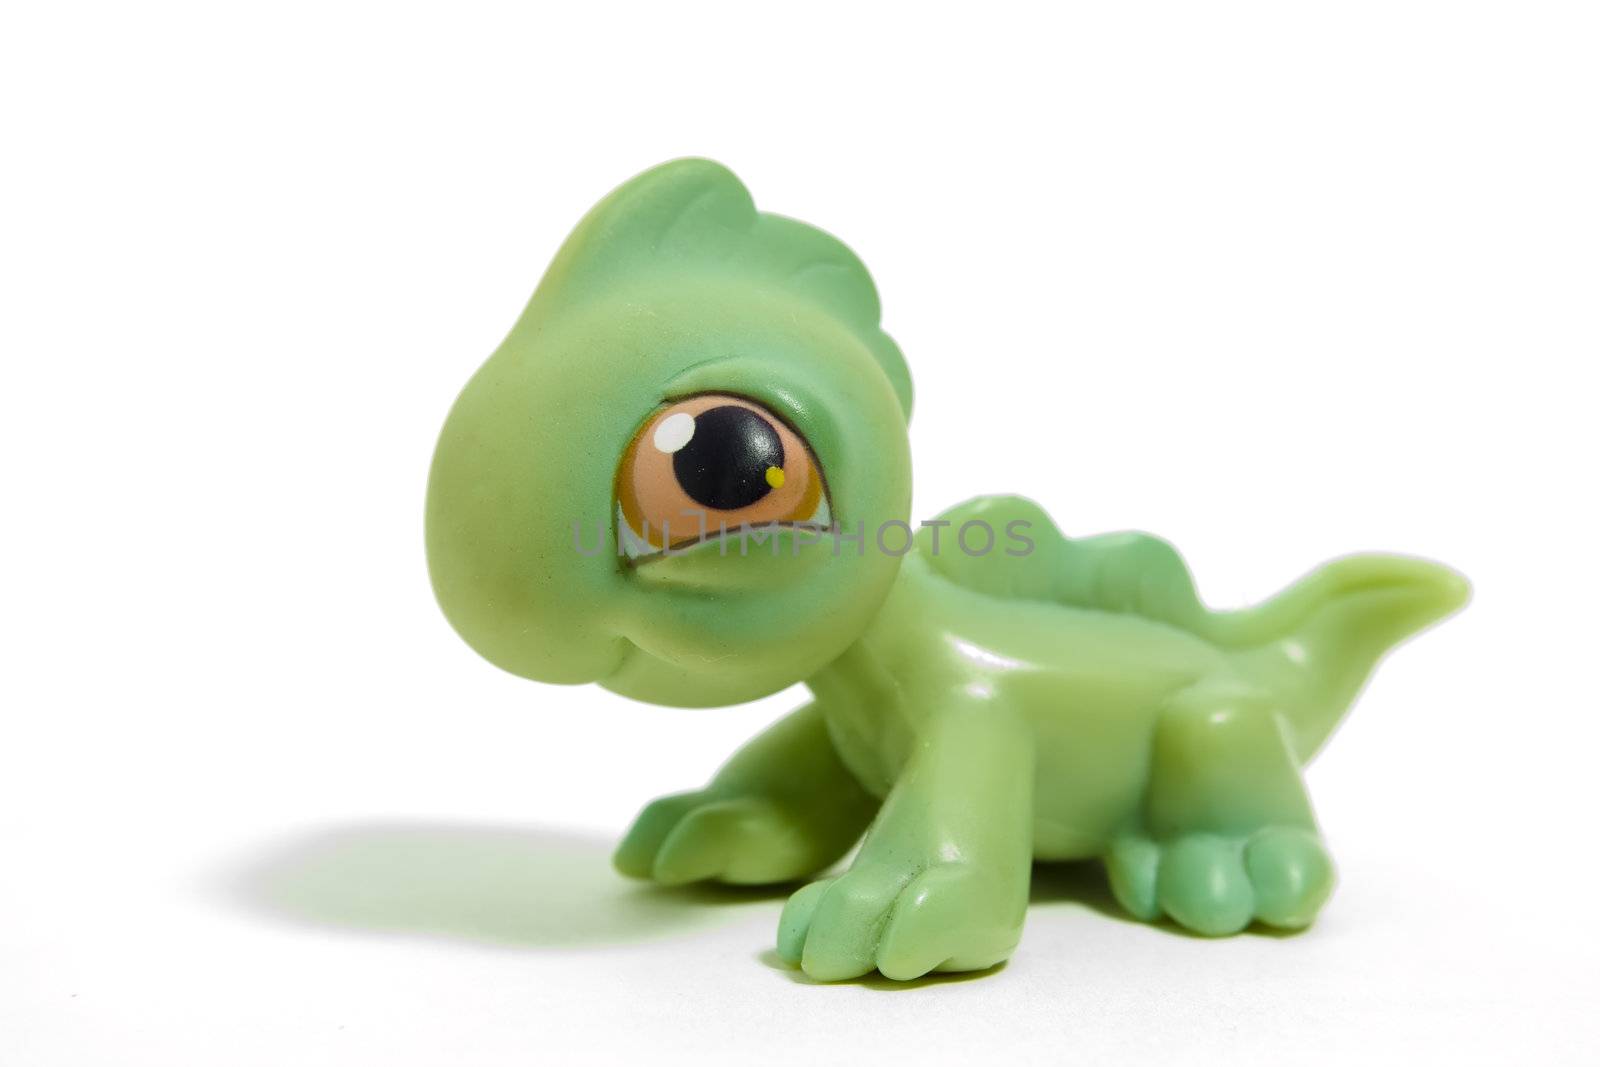 toy dinosaur by nubephoto